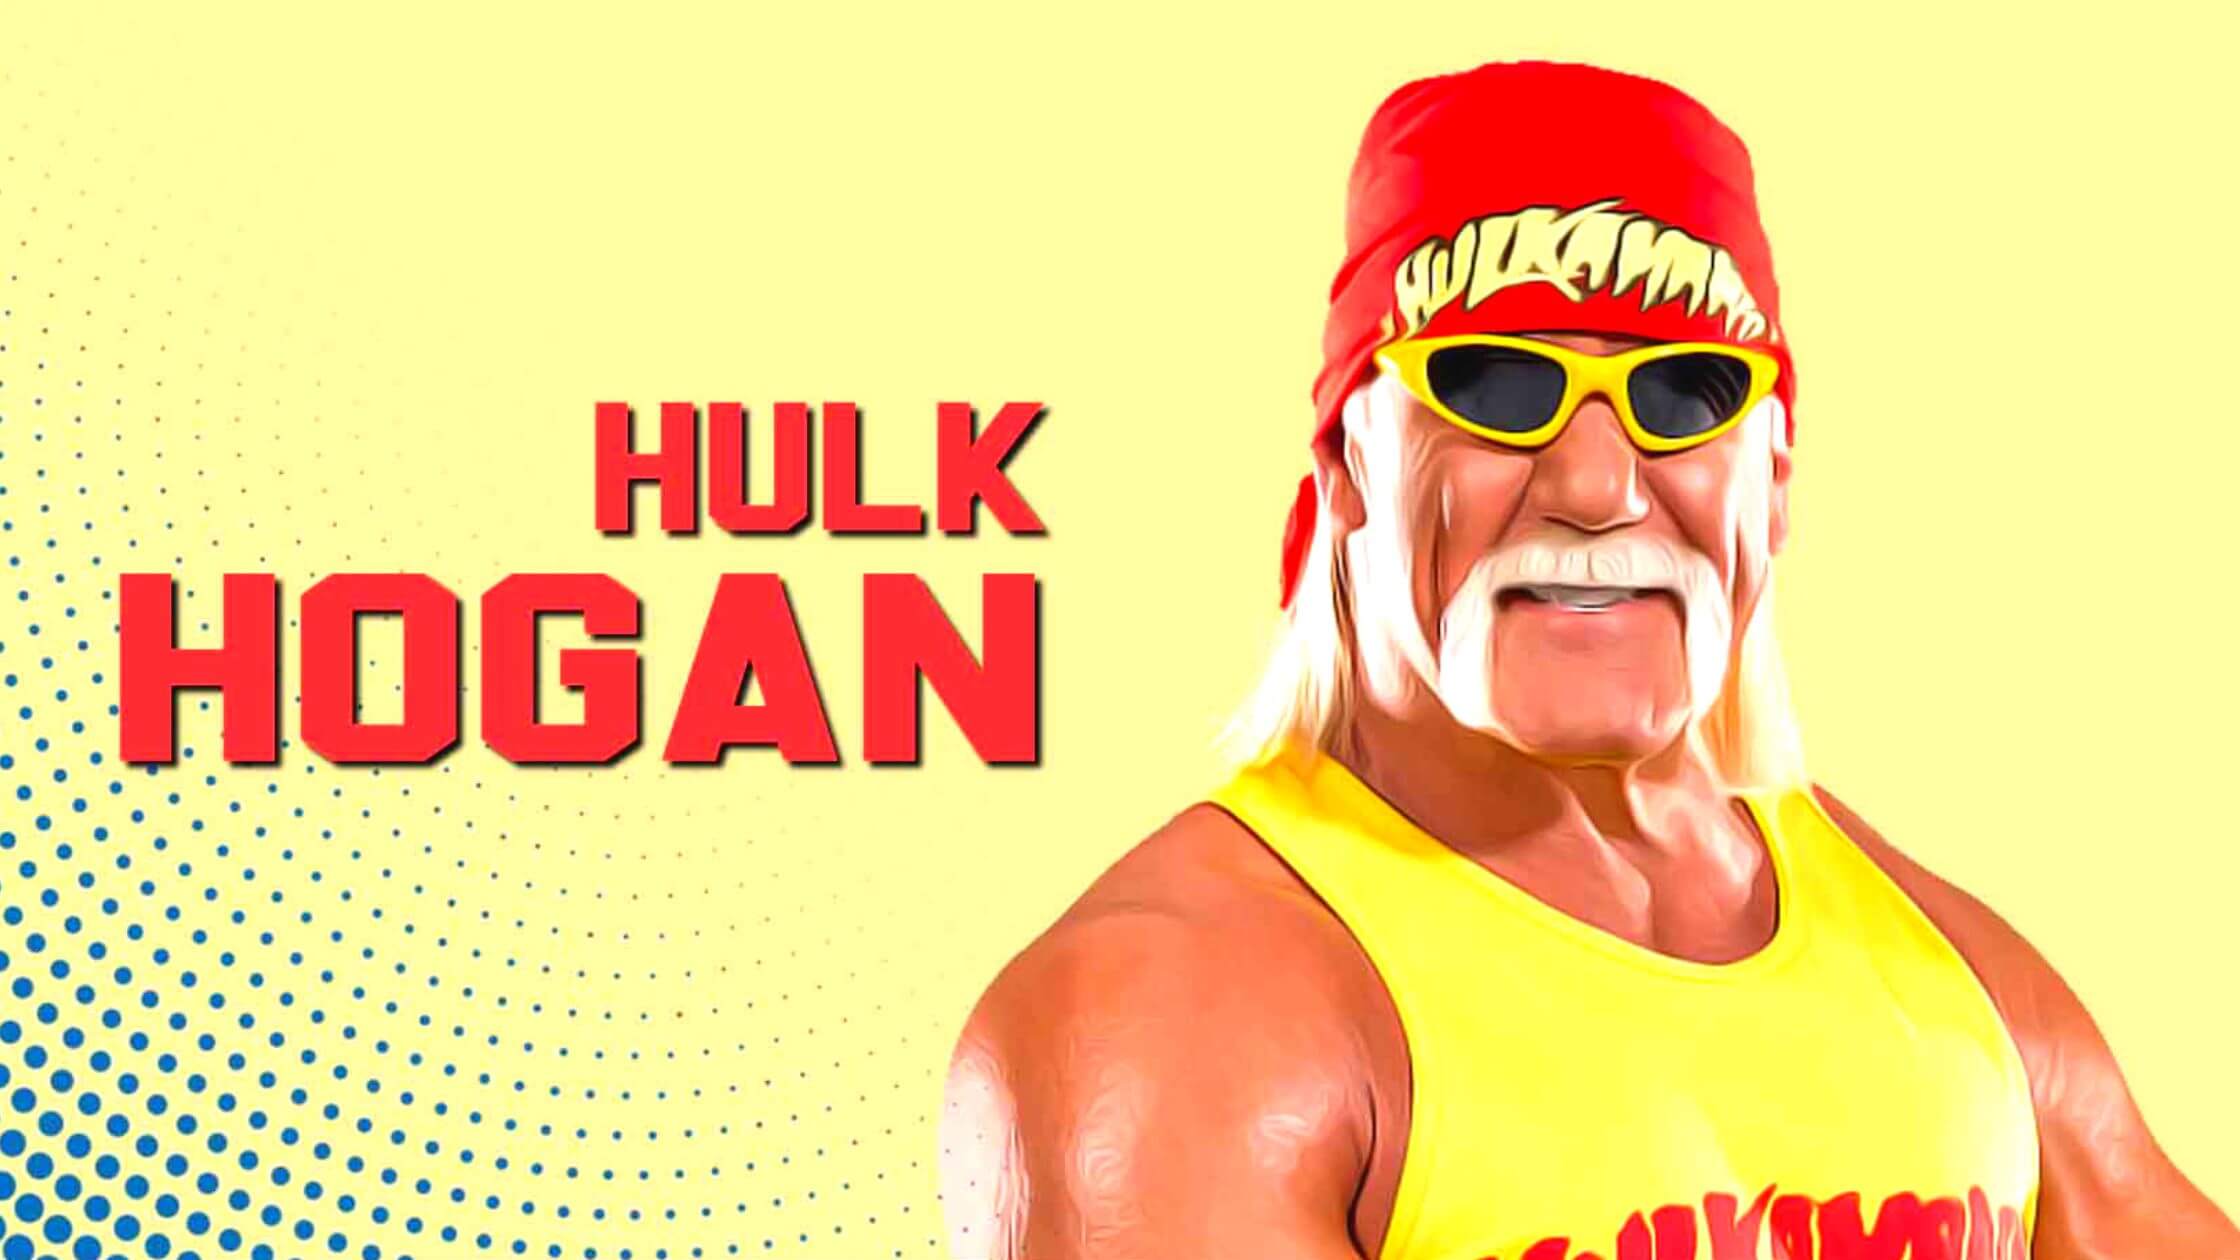 Hulk Hogan The Hulkamania